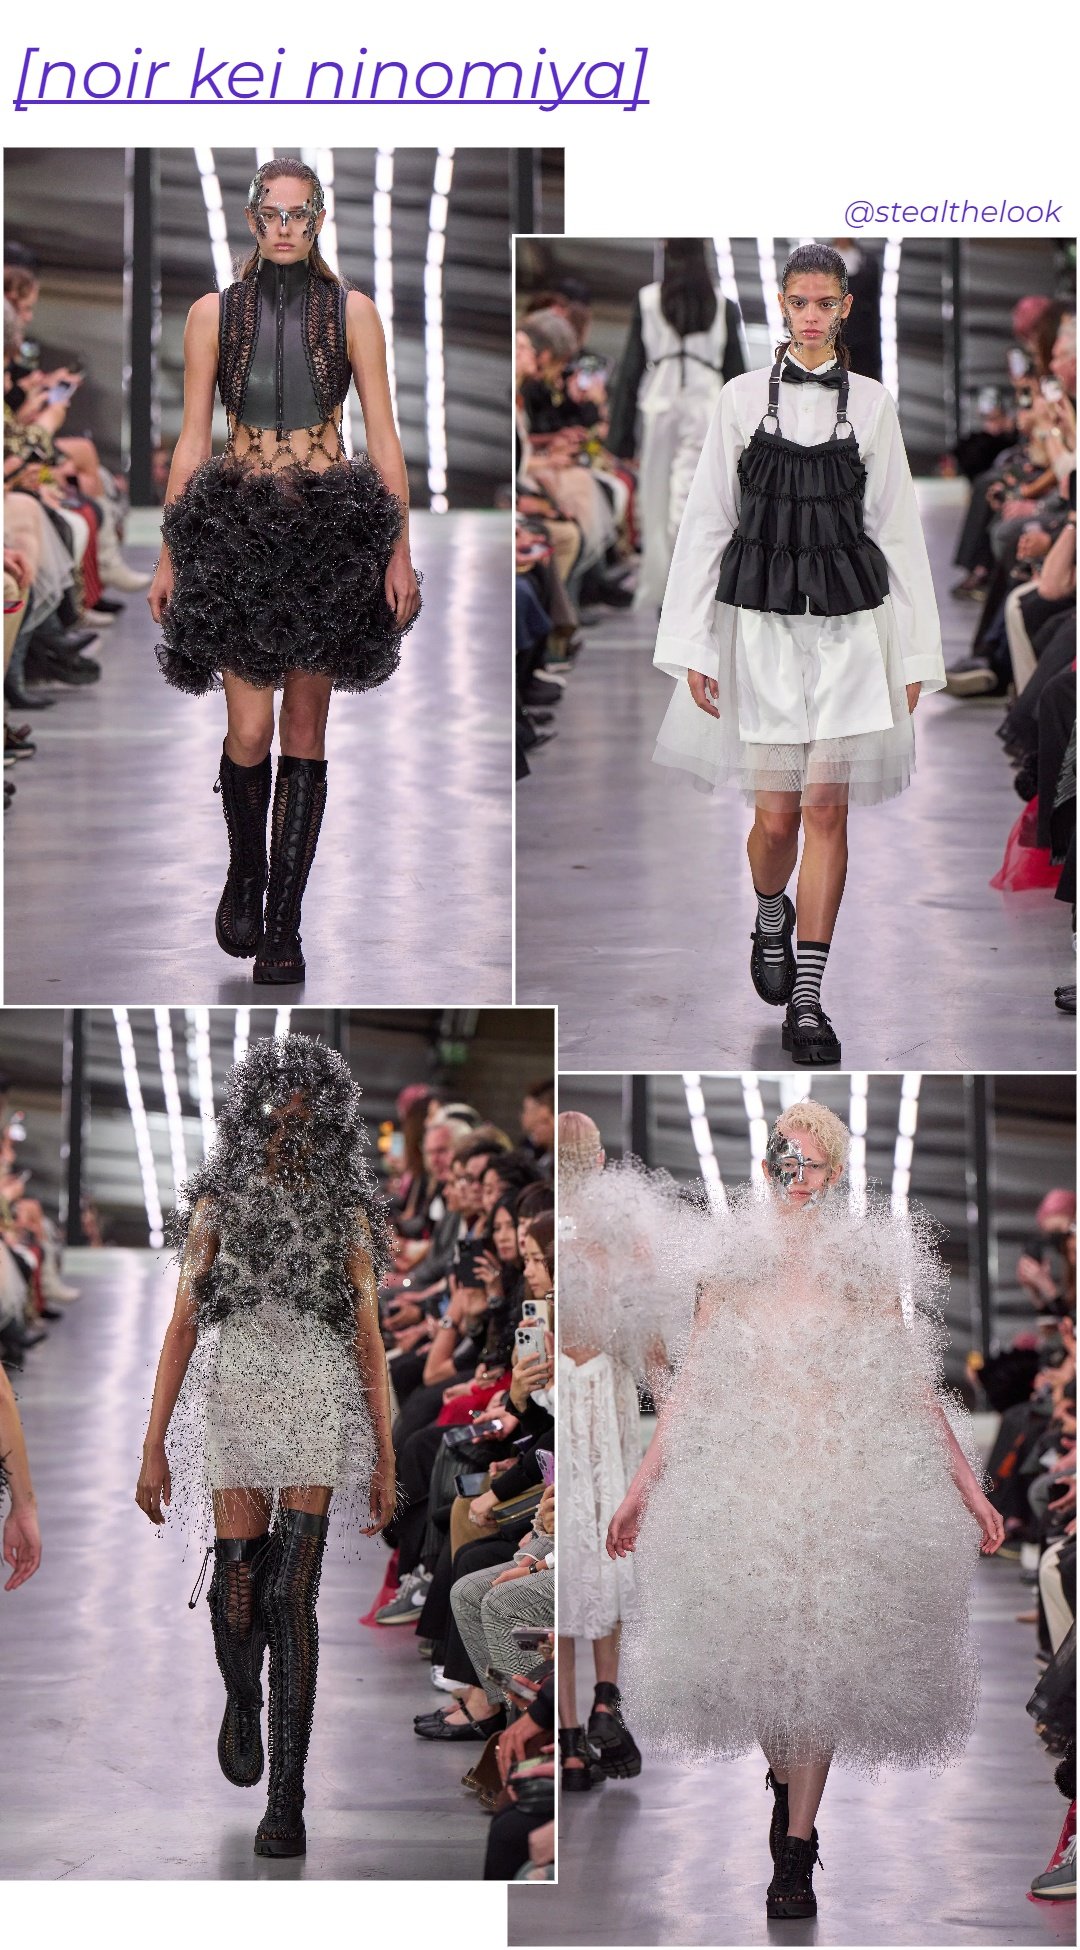 Noir Kei Ninomiya - roupas diversas - Paris Fashion Week - verão - colagem de imagens - https://stealthelook.com.br